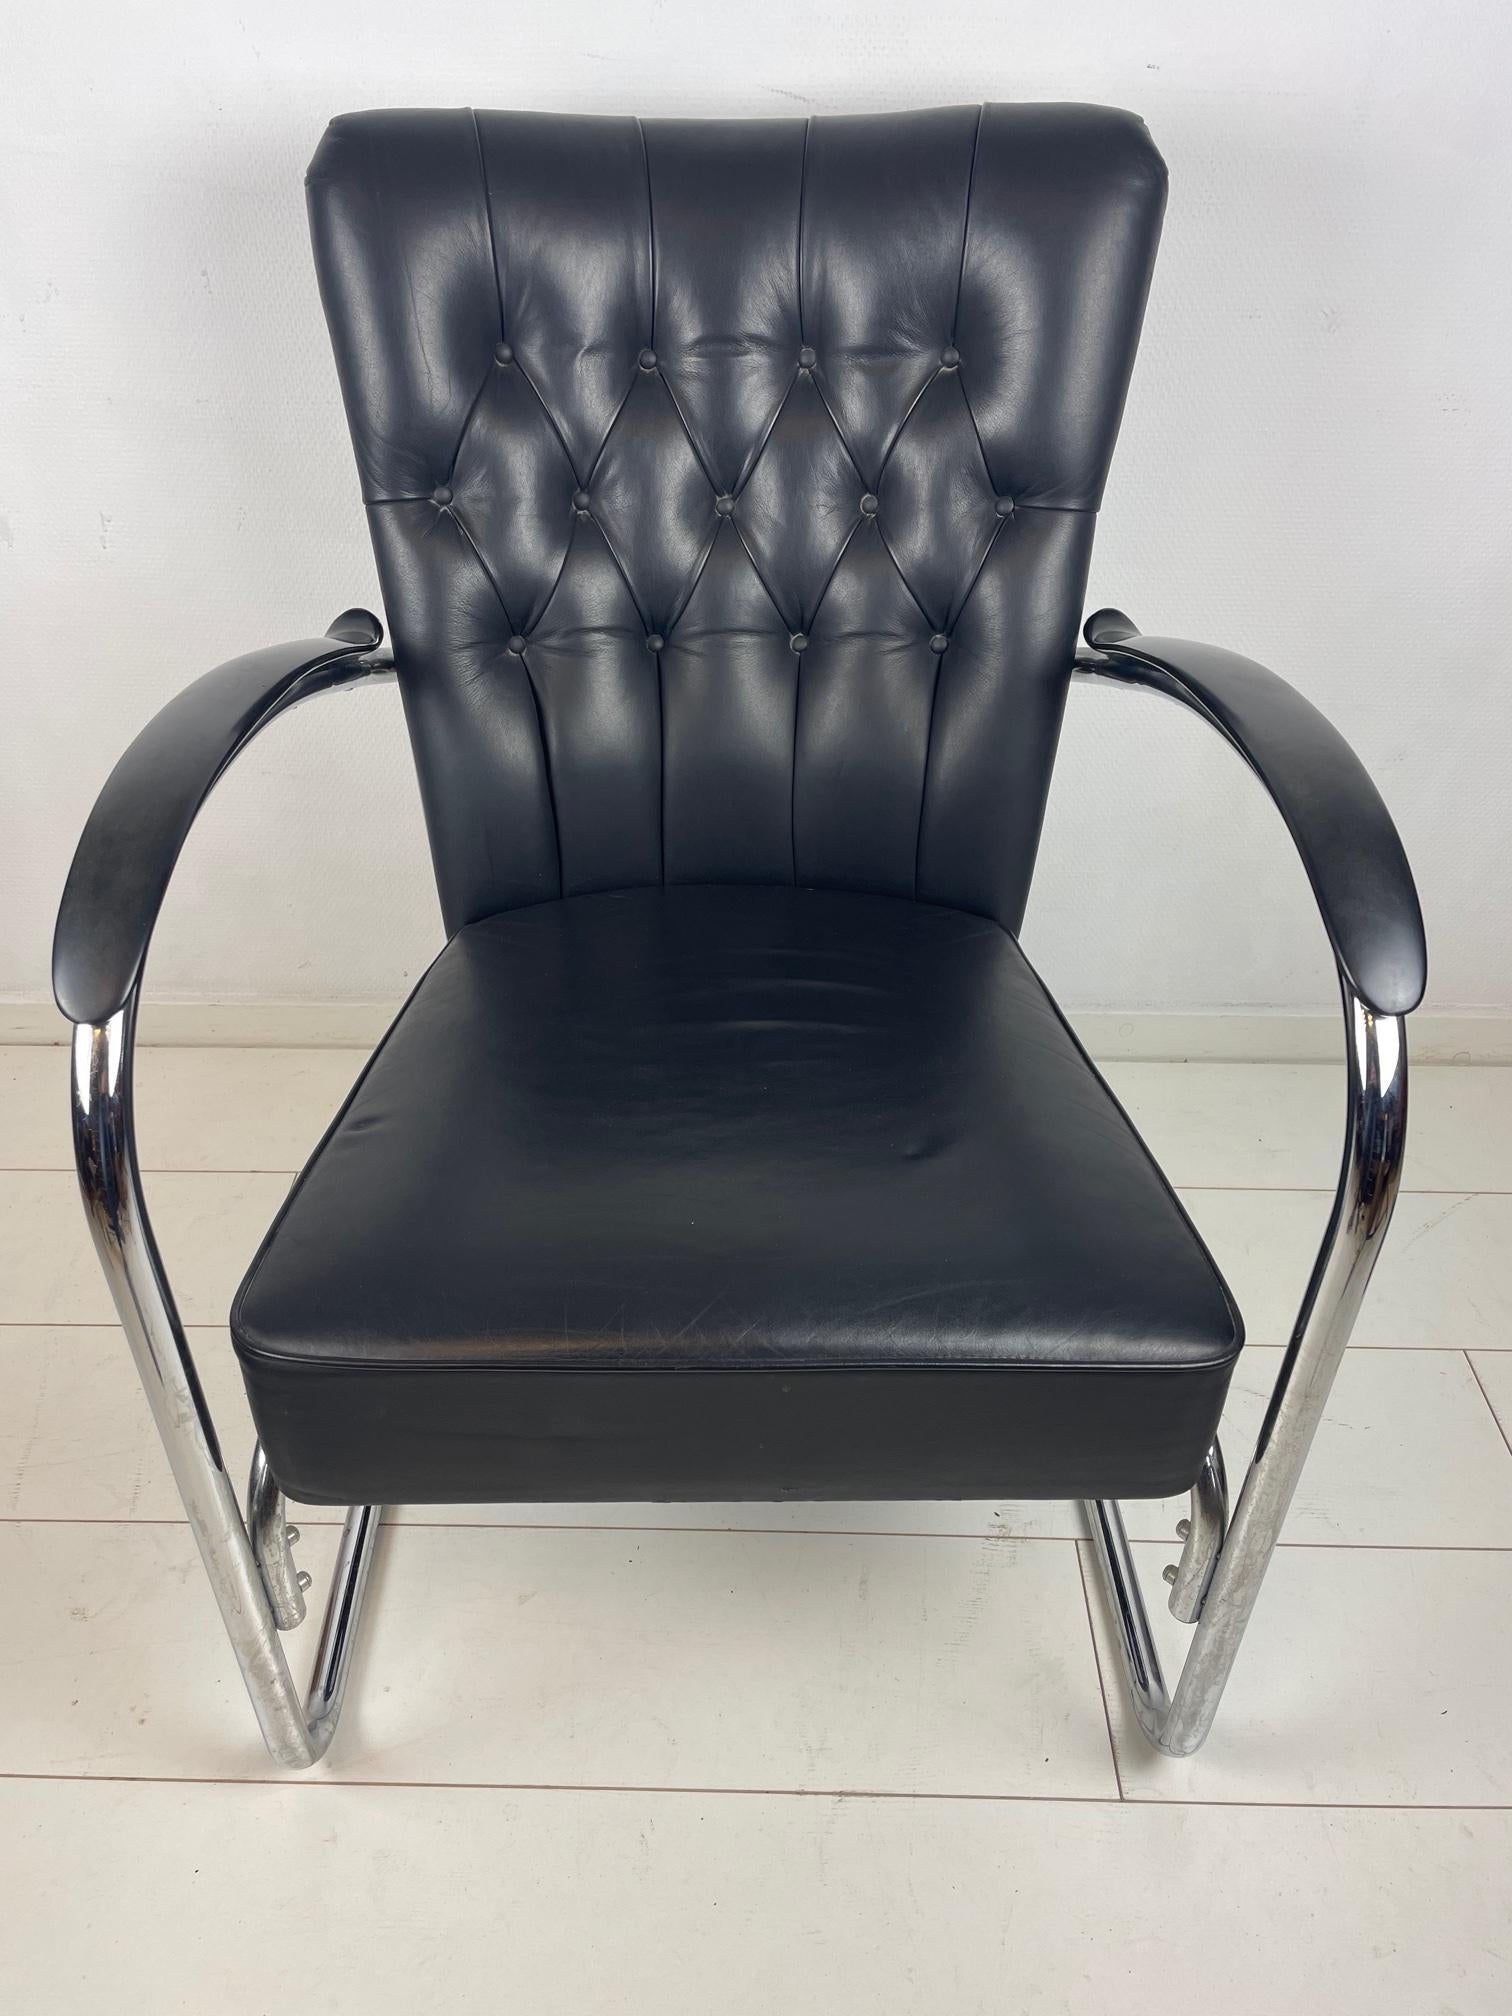 De Stijl Vintage Dutch Design Chair, Gispen 412 GE, Made by Van Der Stroom, Tubular Steel